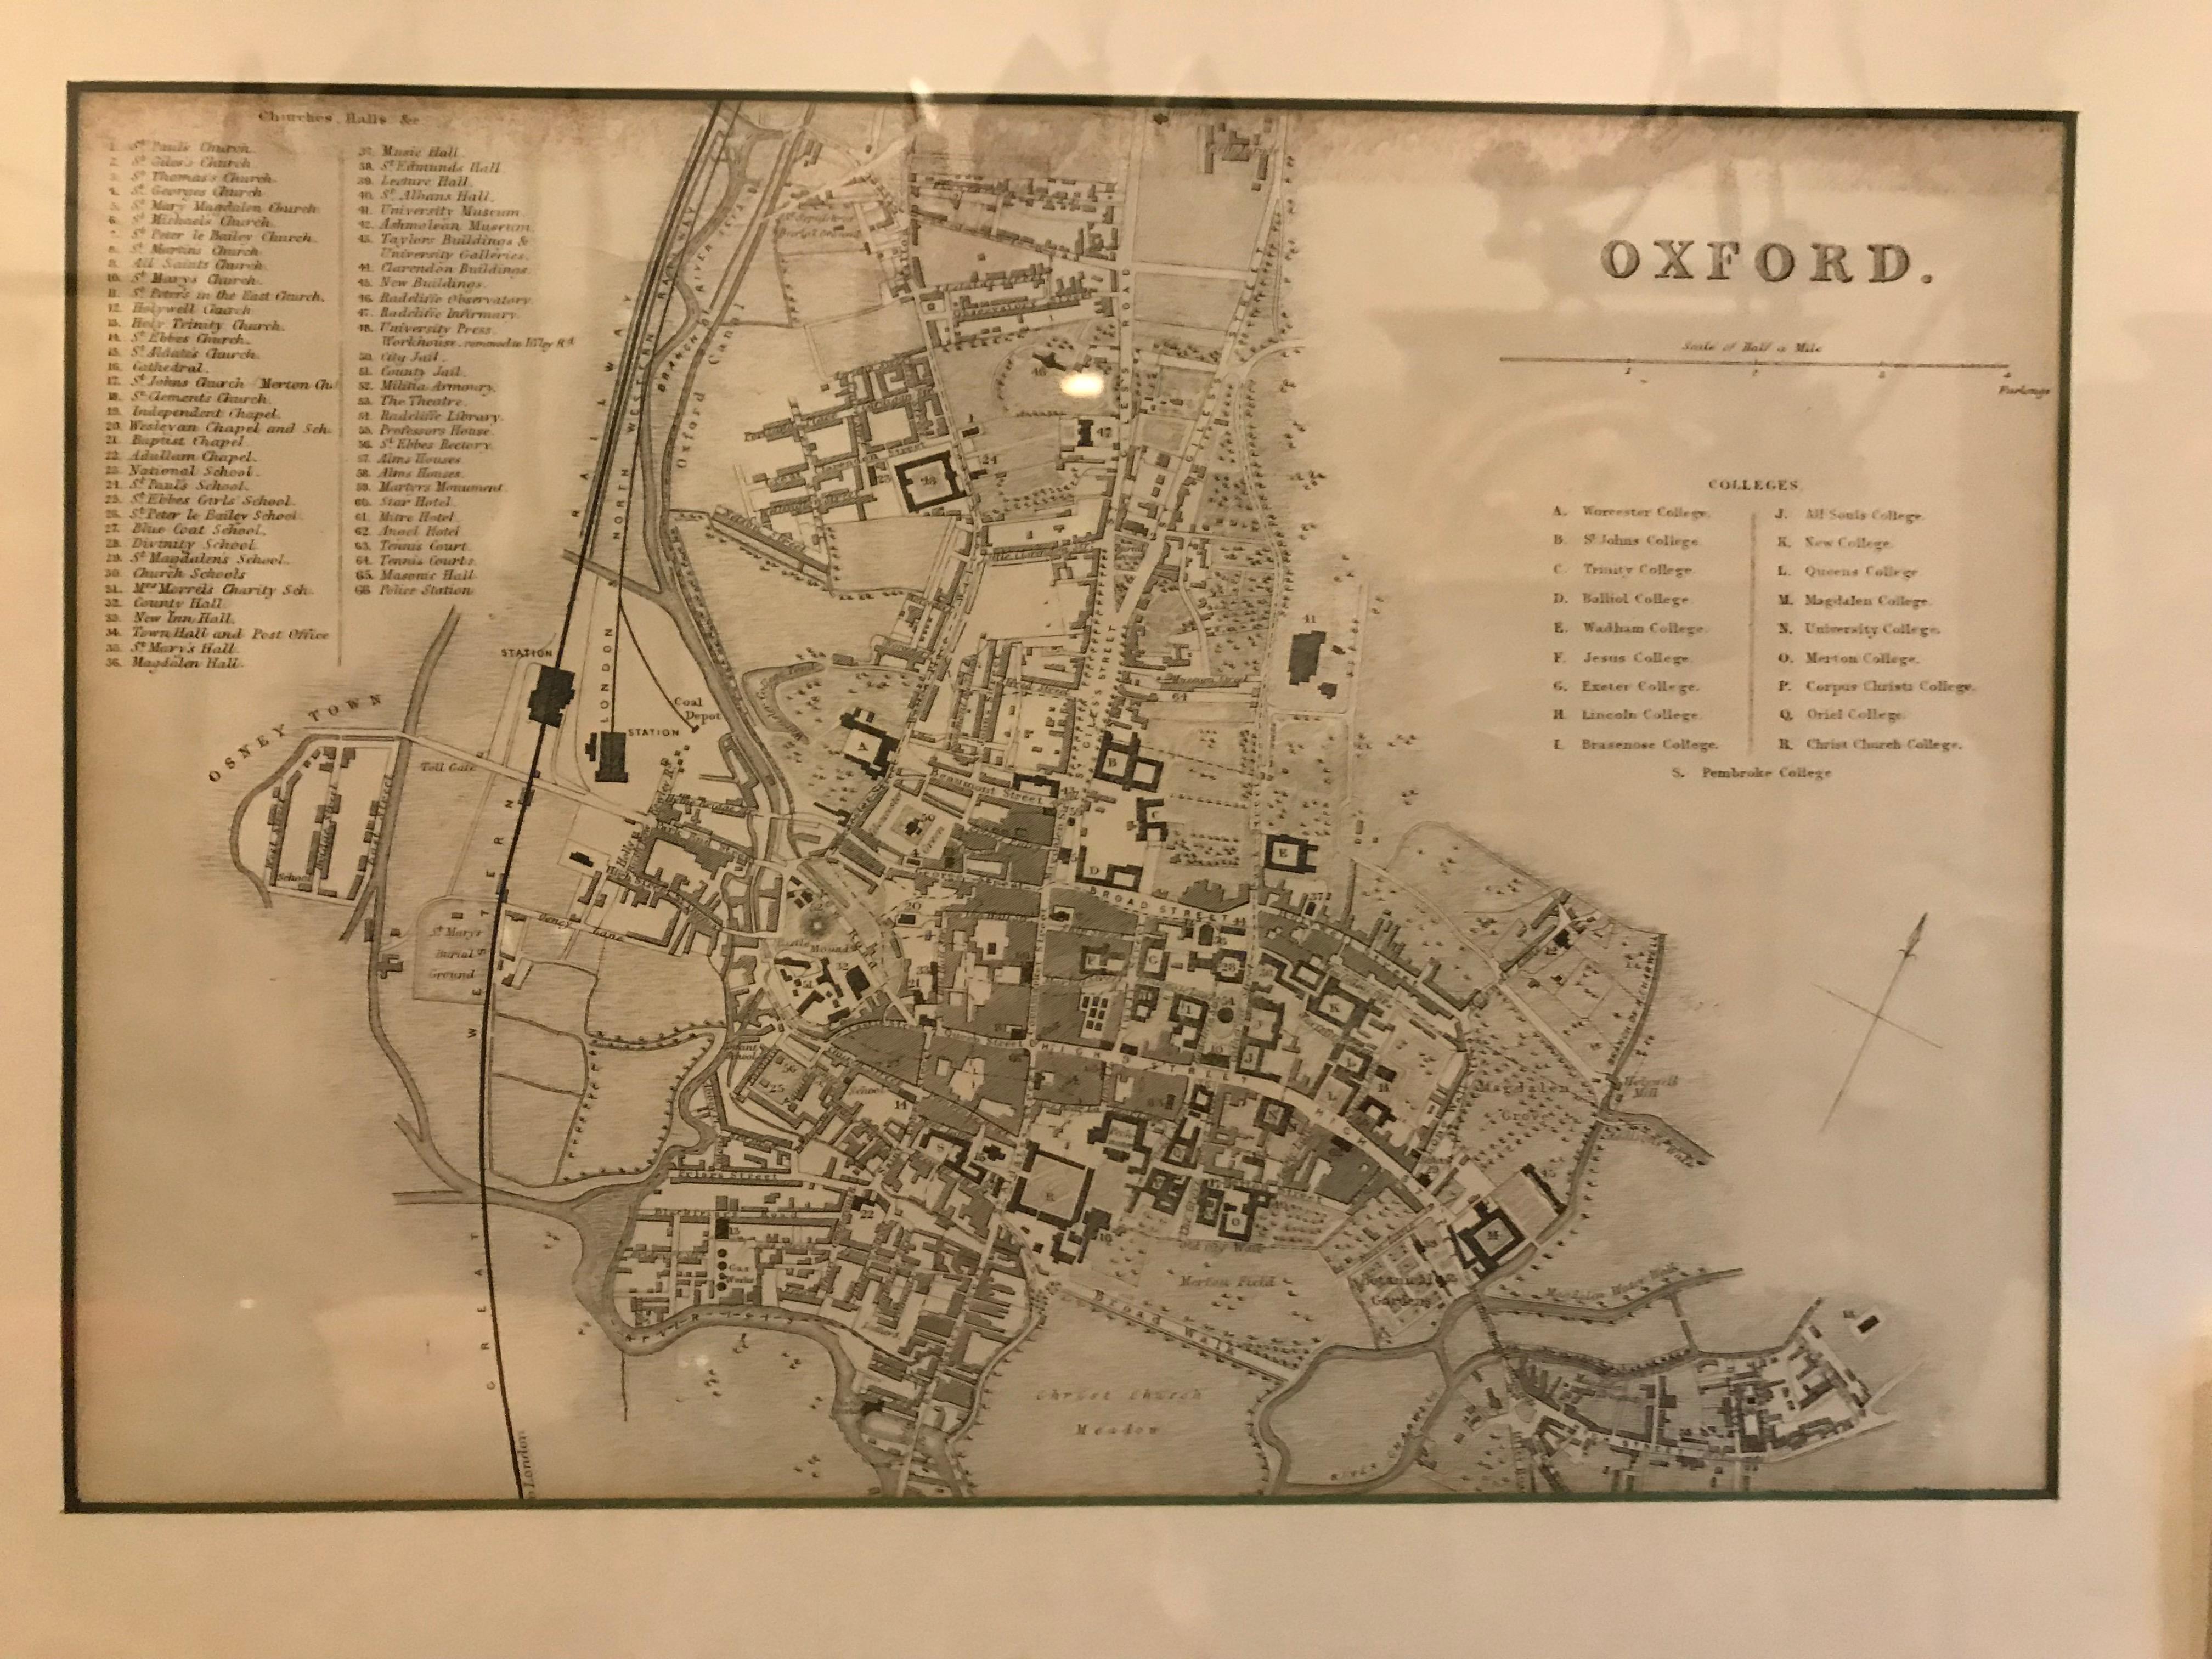 Paire de cartes d'Oxford et de Cambridge dans des cadres en bois noir personnalisés. Avec un magnifique lettrage dessiné à la main et un souci du détail époustouflant, ces cartes du milieu du XIXe siècle sont un excellent exemple de la cartographie